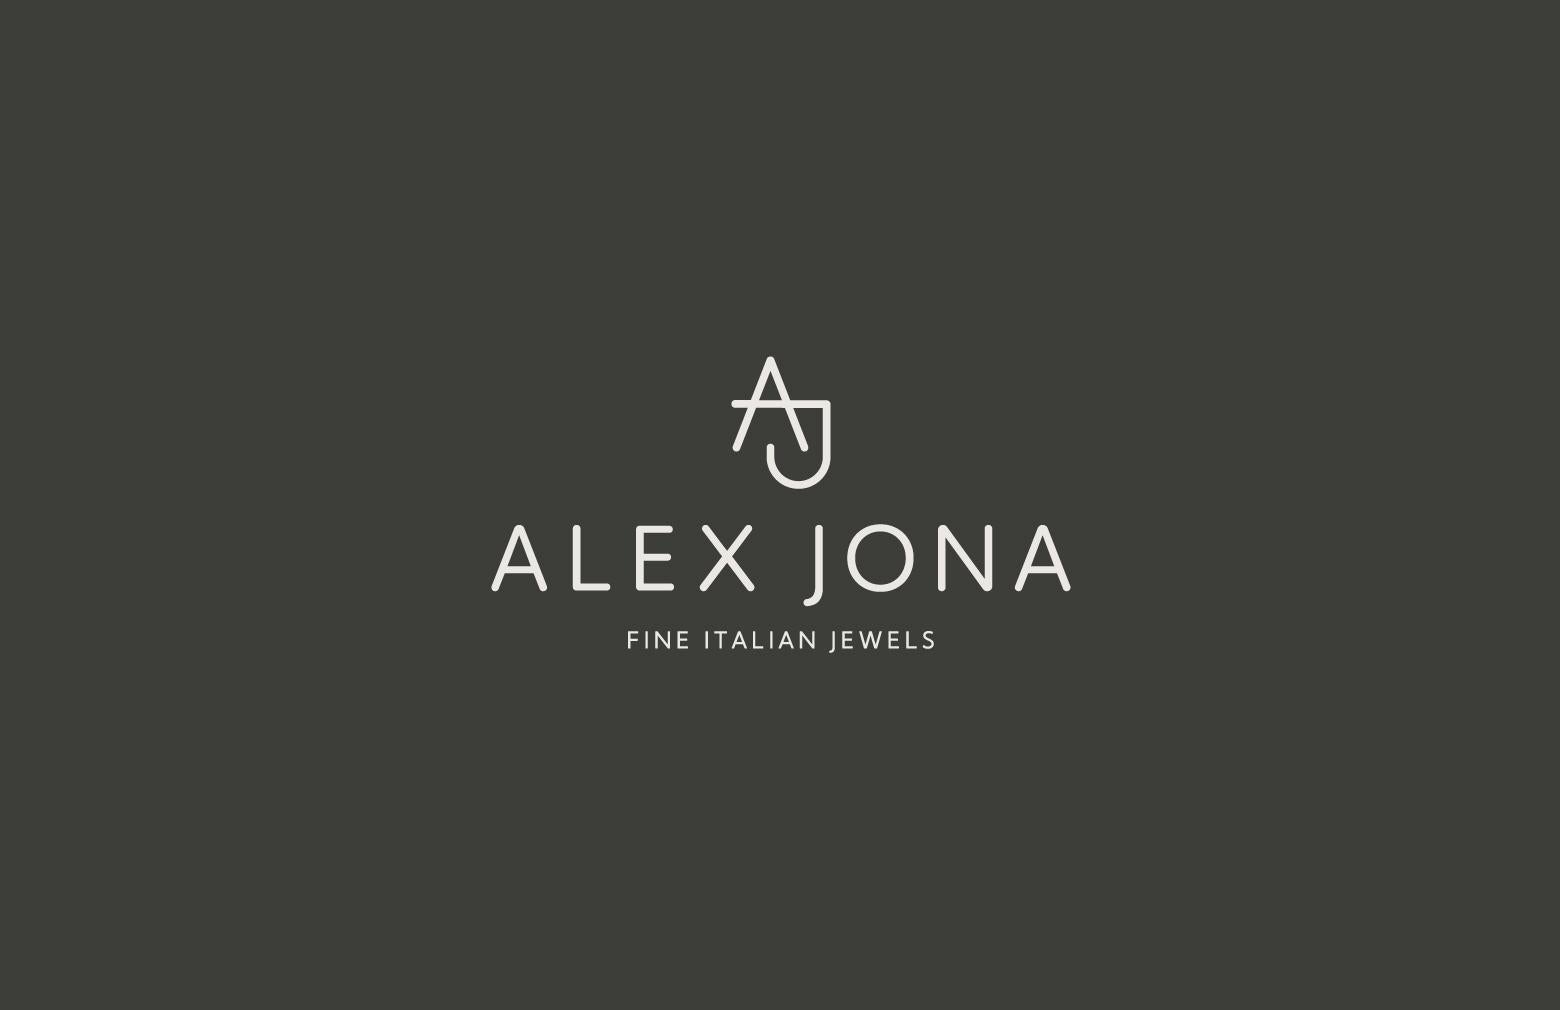 Alex Jona White Diamond Treillage 18 Karat Yellow Gold Eternity Band Ring For Sale 5